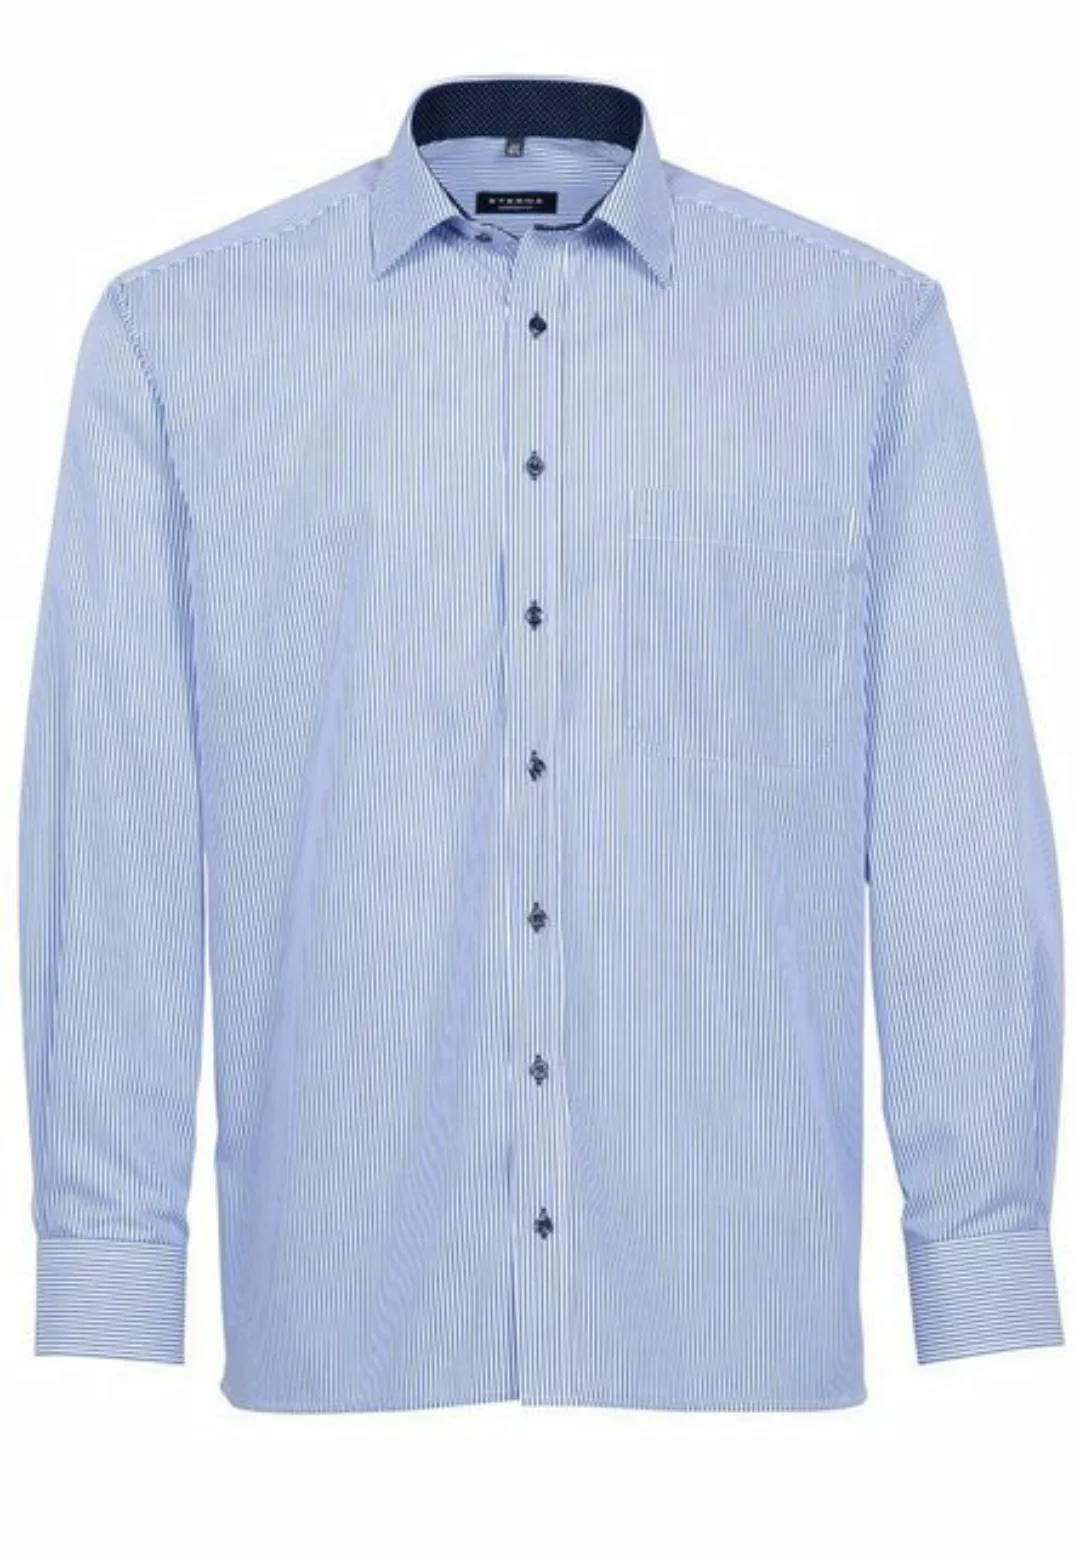 Eterna Klassische Bluse ETERNA COMFORT FIT Langarm Hemd blau-weiß gestreift günstig online kaufen